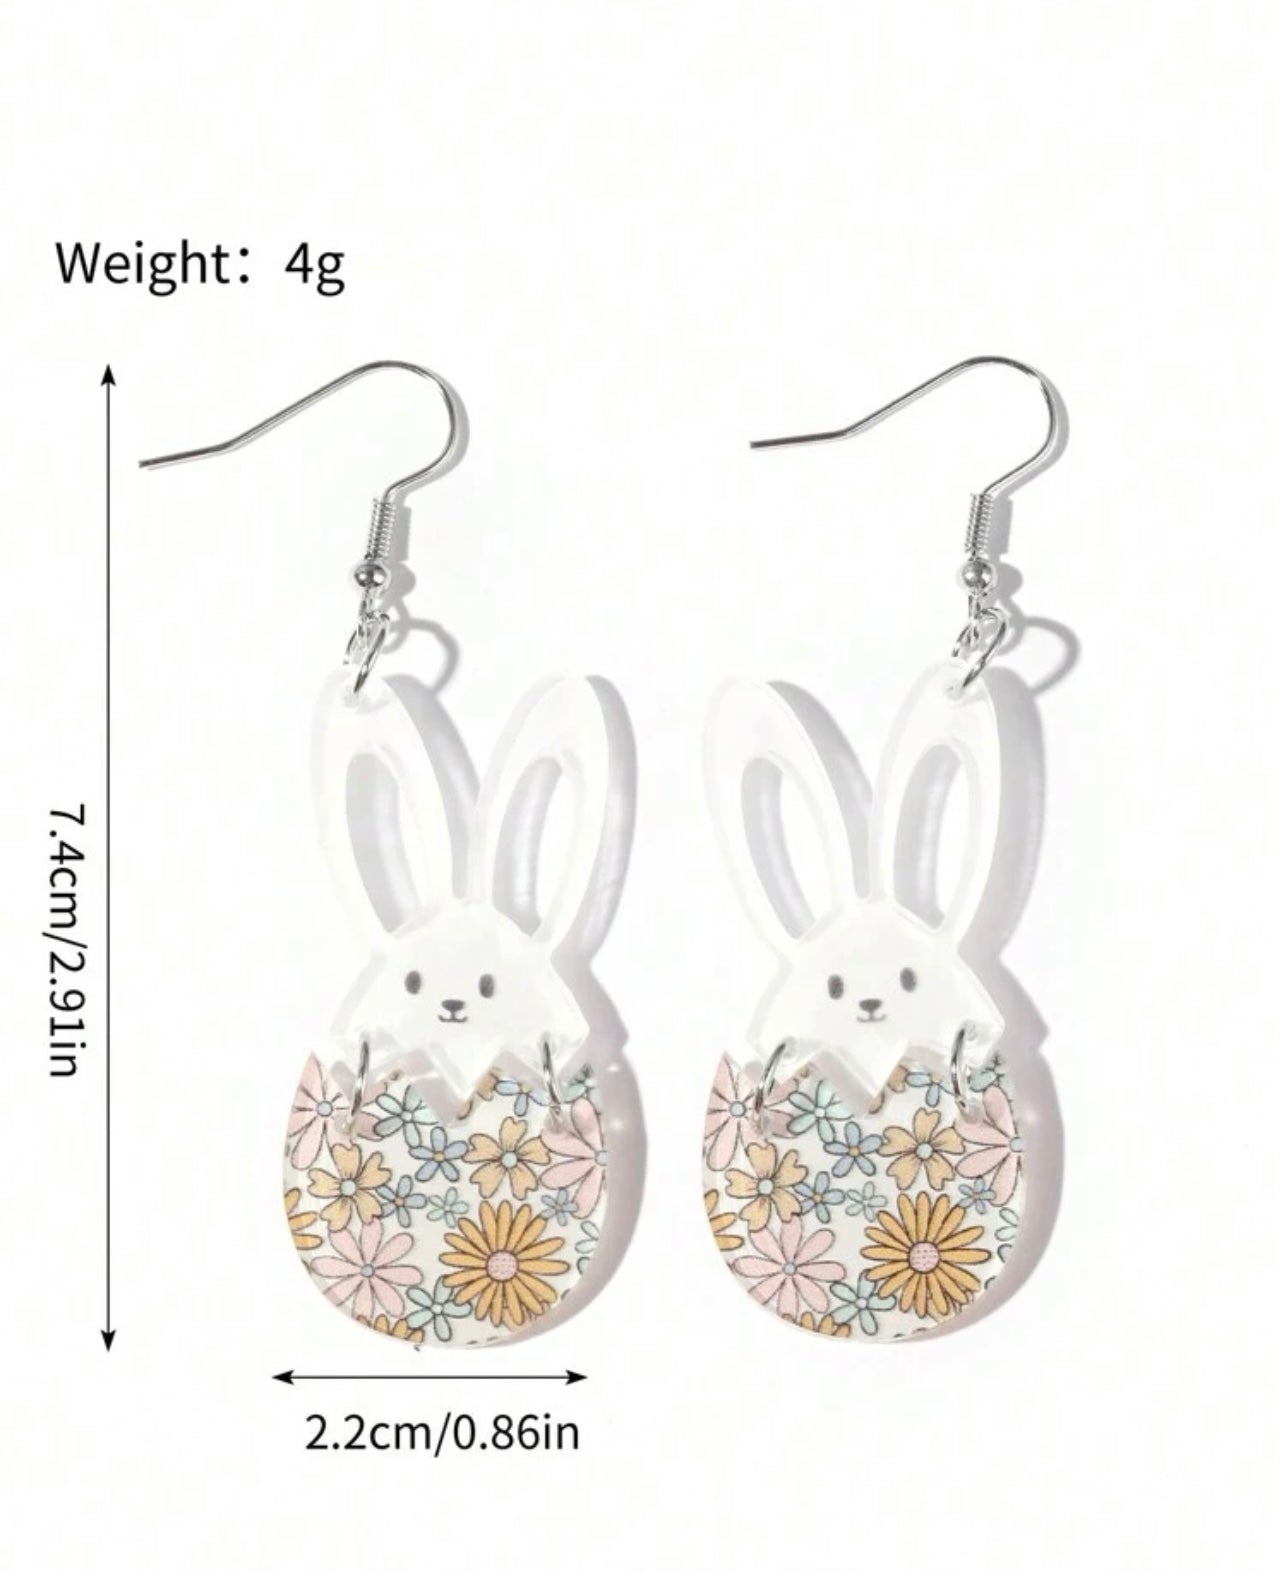 Beautiful Acrylic Bunny Earrings